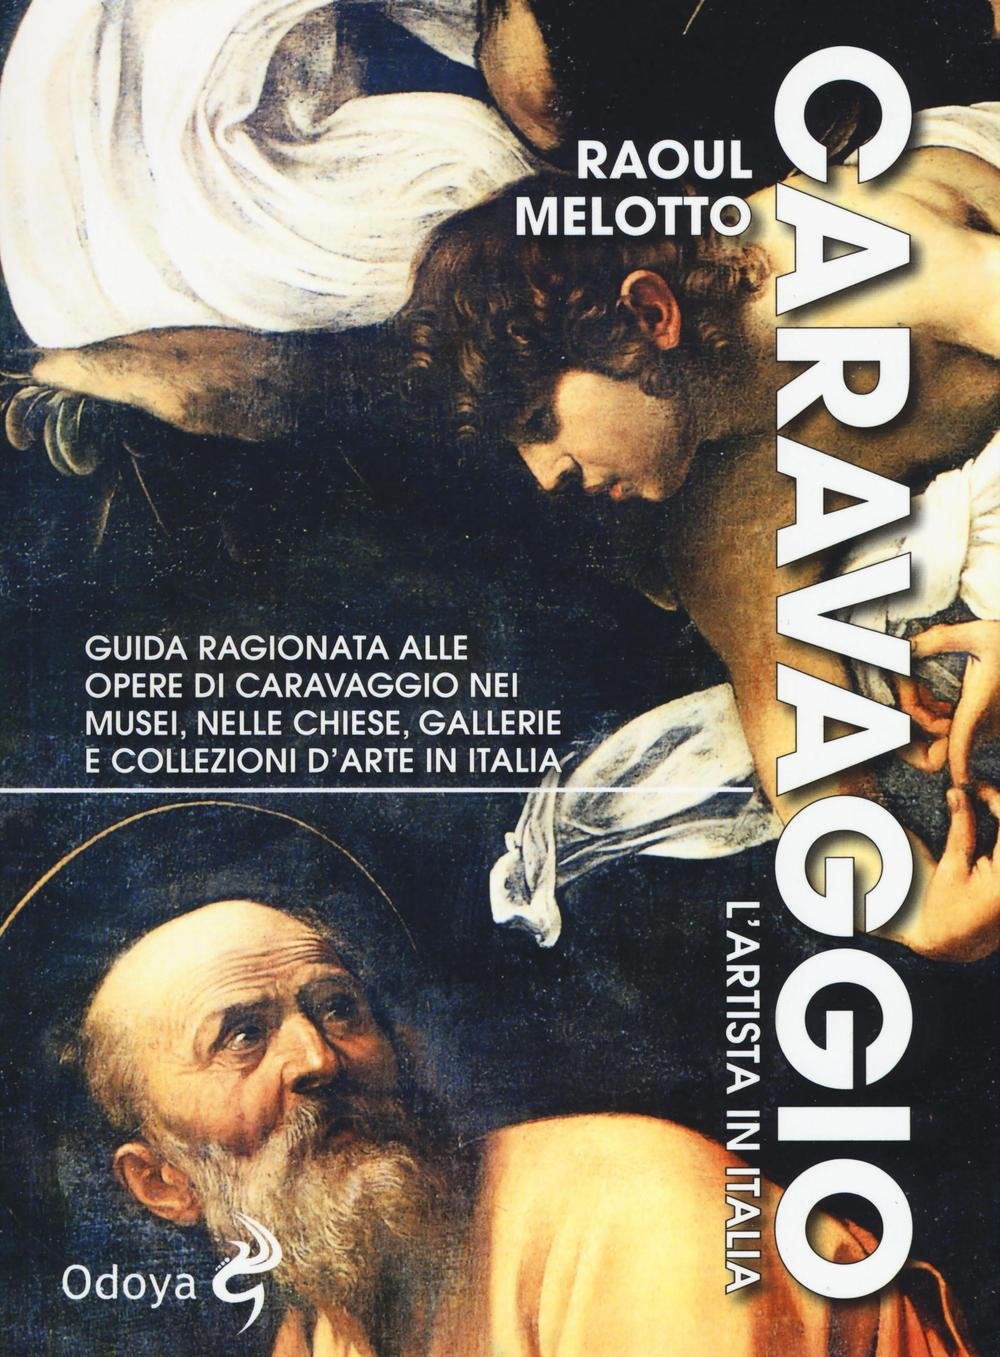 Libri Raoul Melotto - Caravaggio. L'artista In Italia. Ediz. Illustrata NUOVO SIGILLATO, EDIZIONE DEL 30/06/2016 SUBITO DISPONIBILE